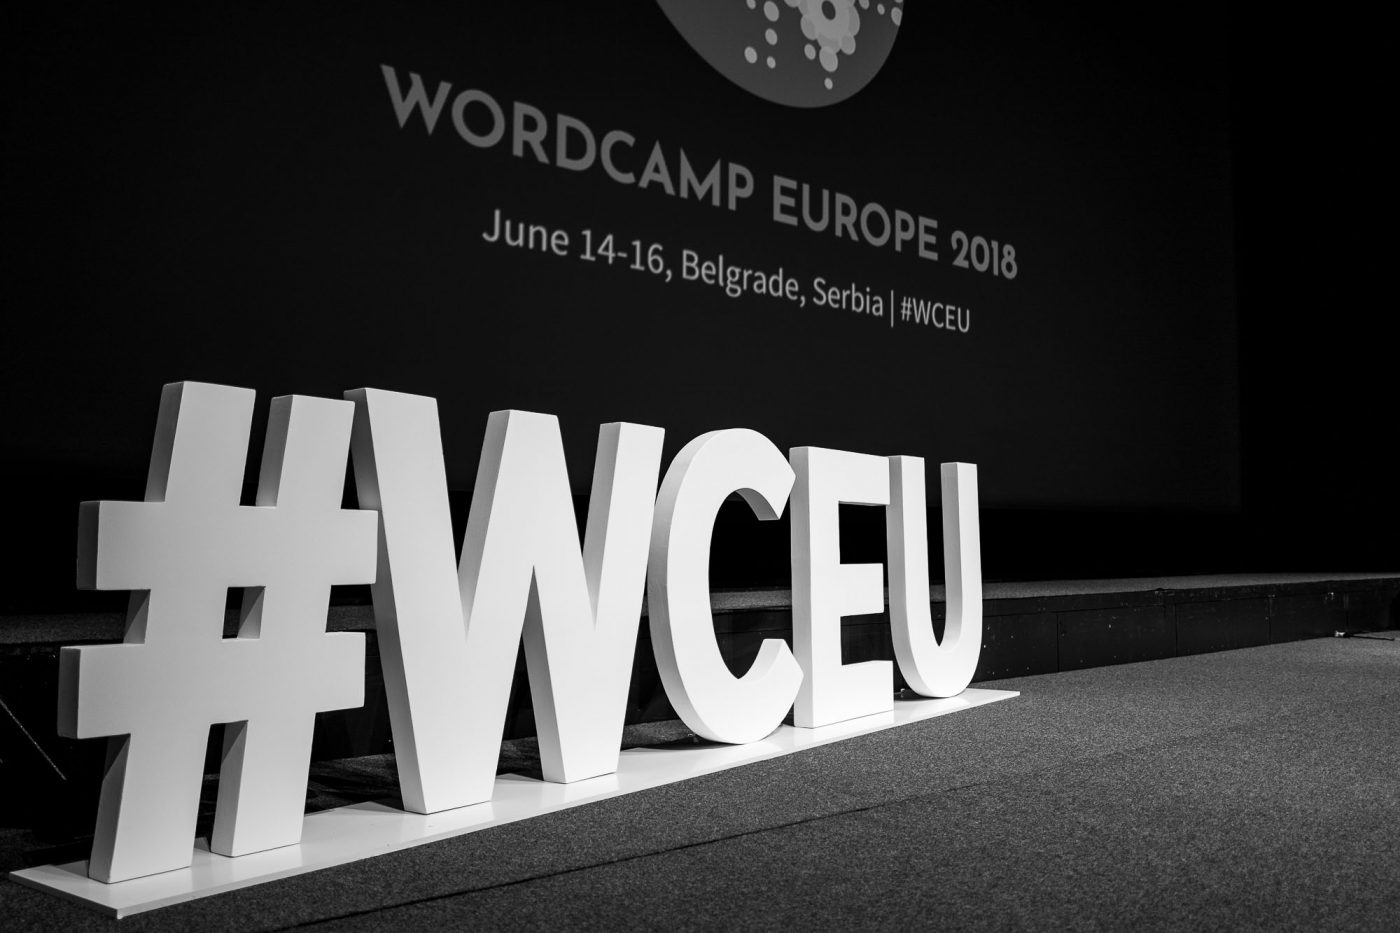 #WCEU - Hashtag auf der Bühne des WordCamp Europe's